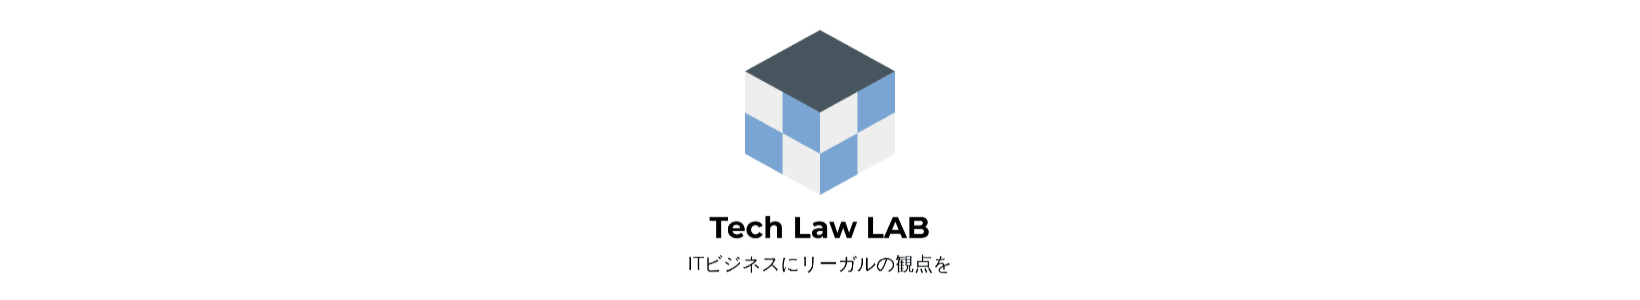 Tech Law LAB